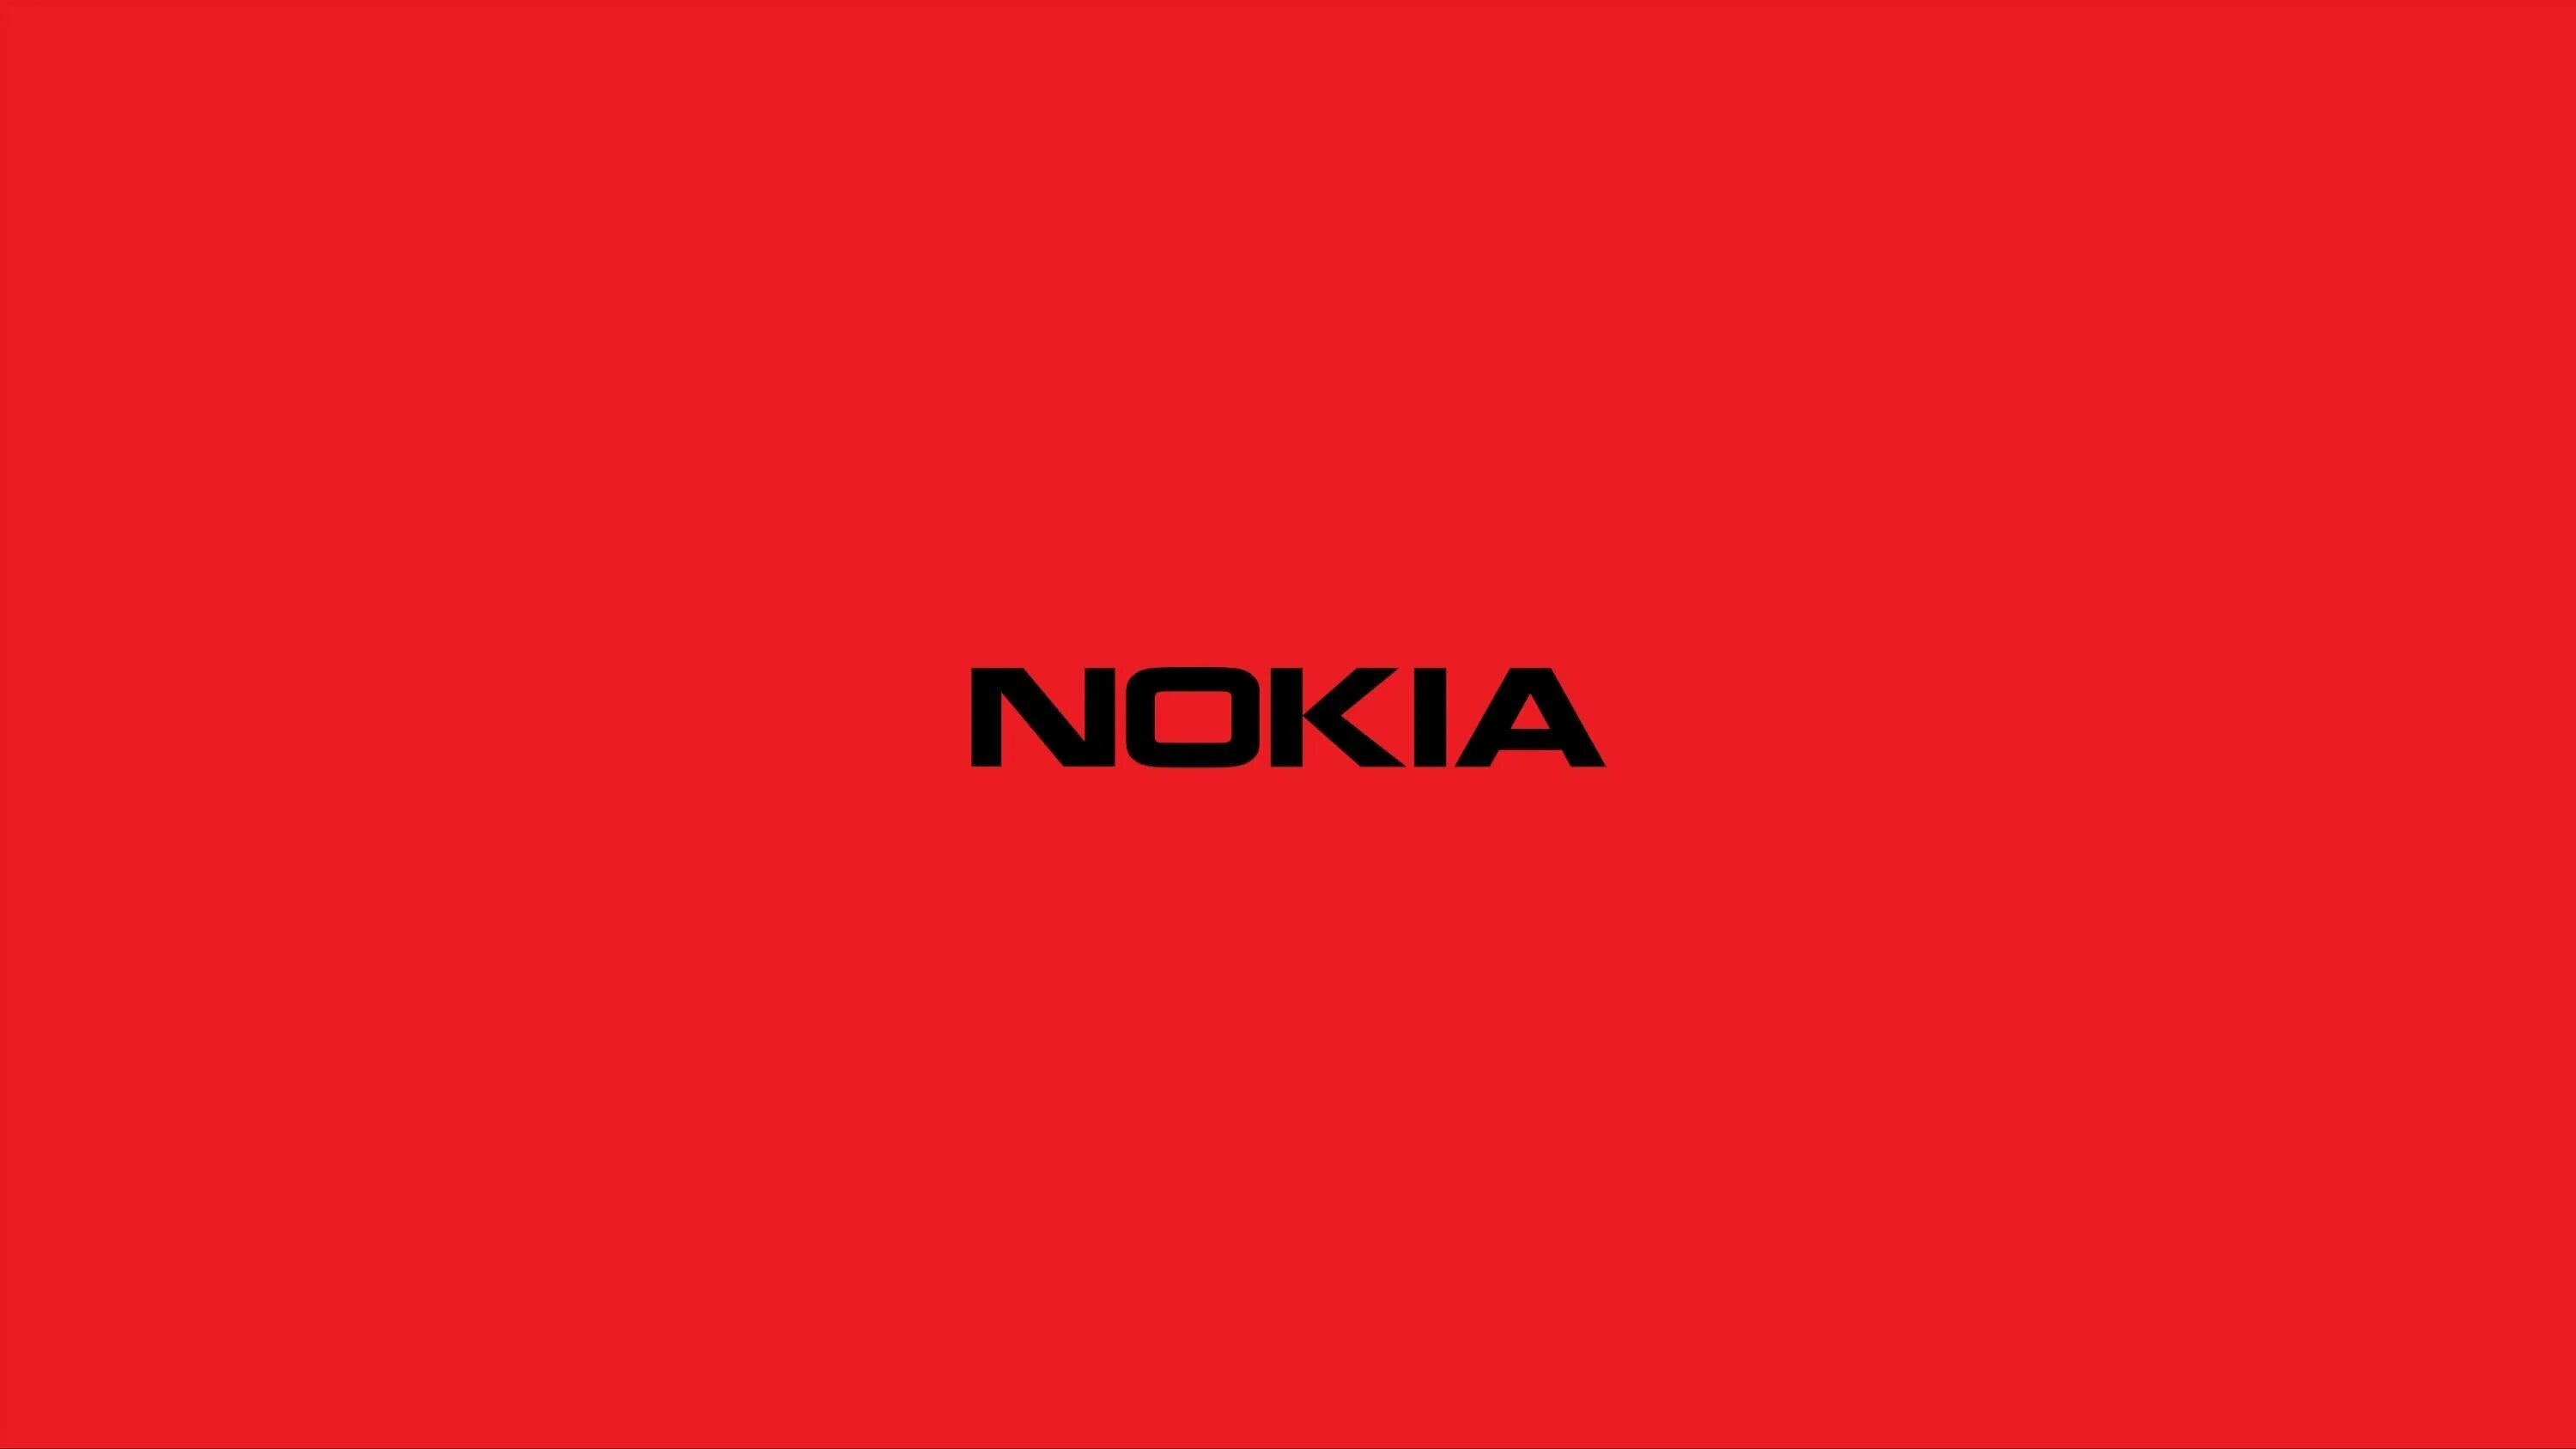 Обои на телефон нокиа. Нокиа логотип. Обои Nokia. Надпись на Красном фоне. Нокиа надпись.